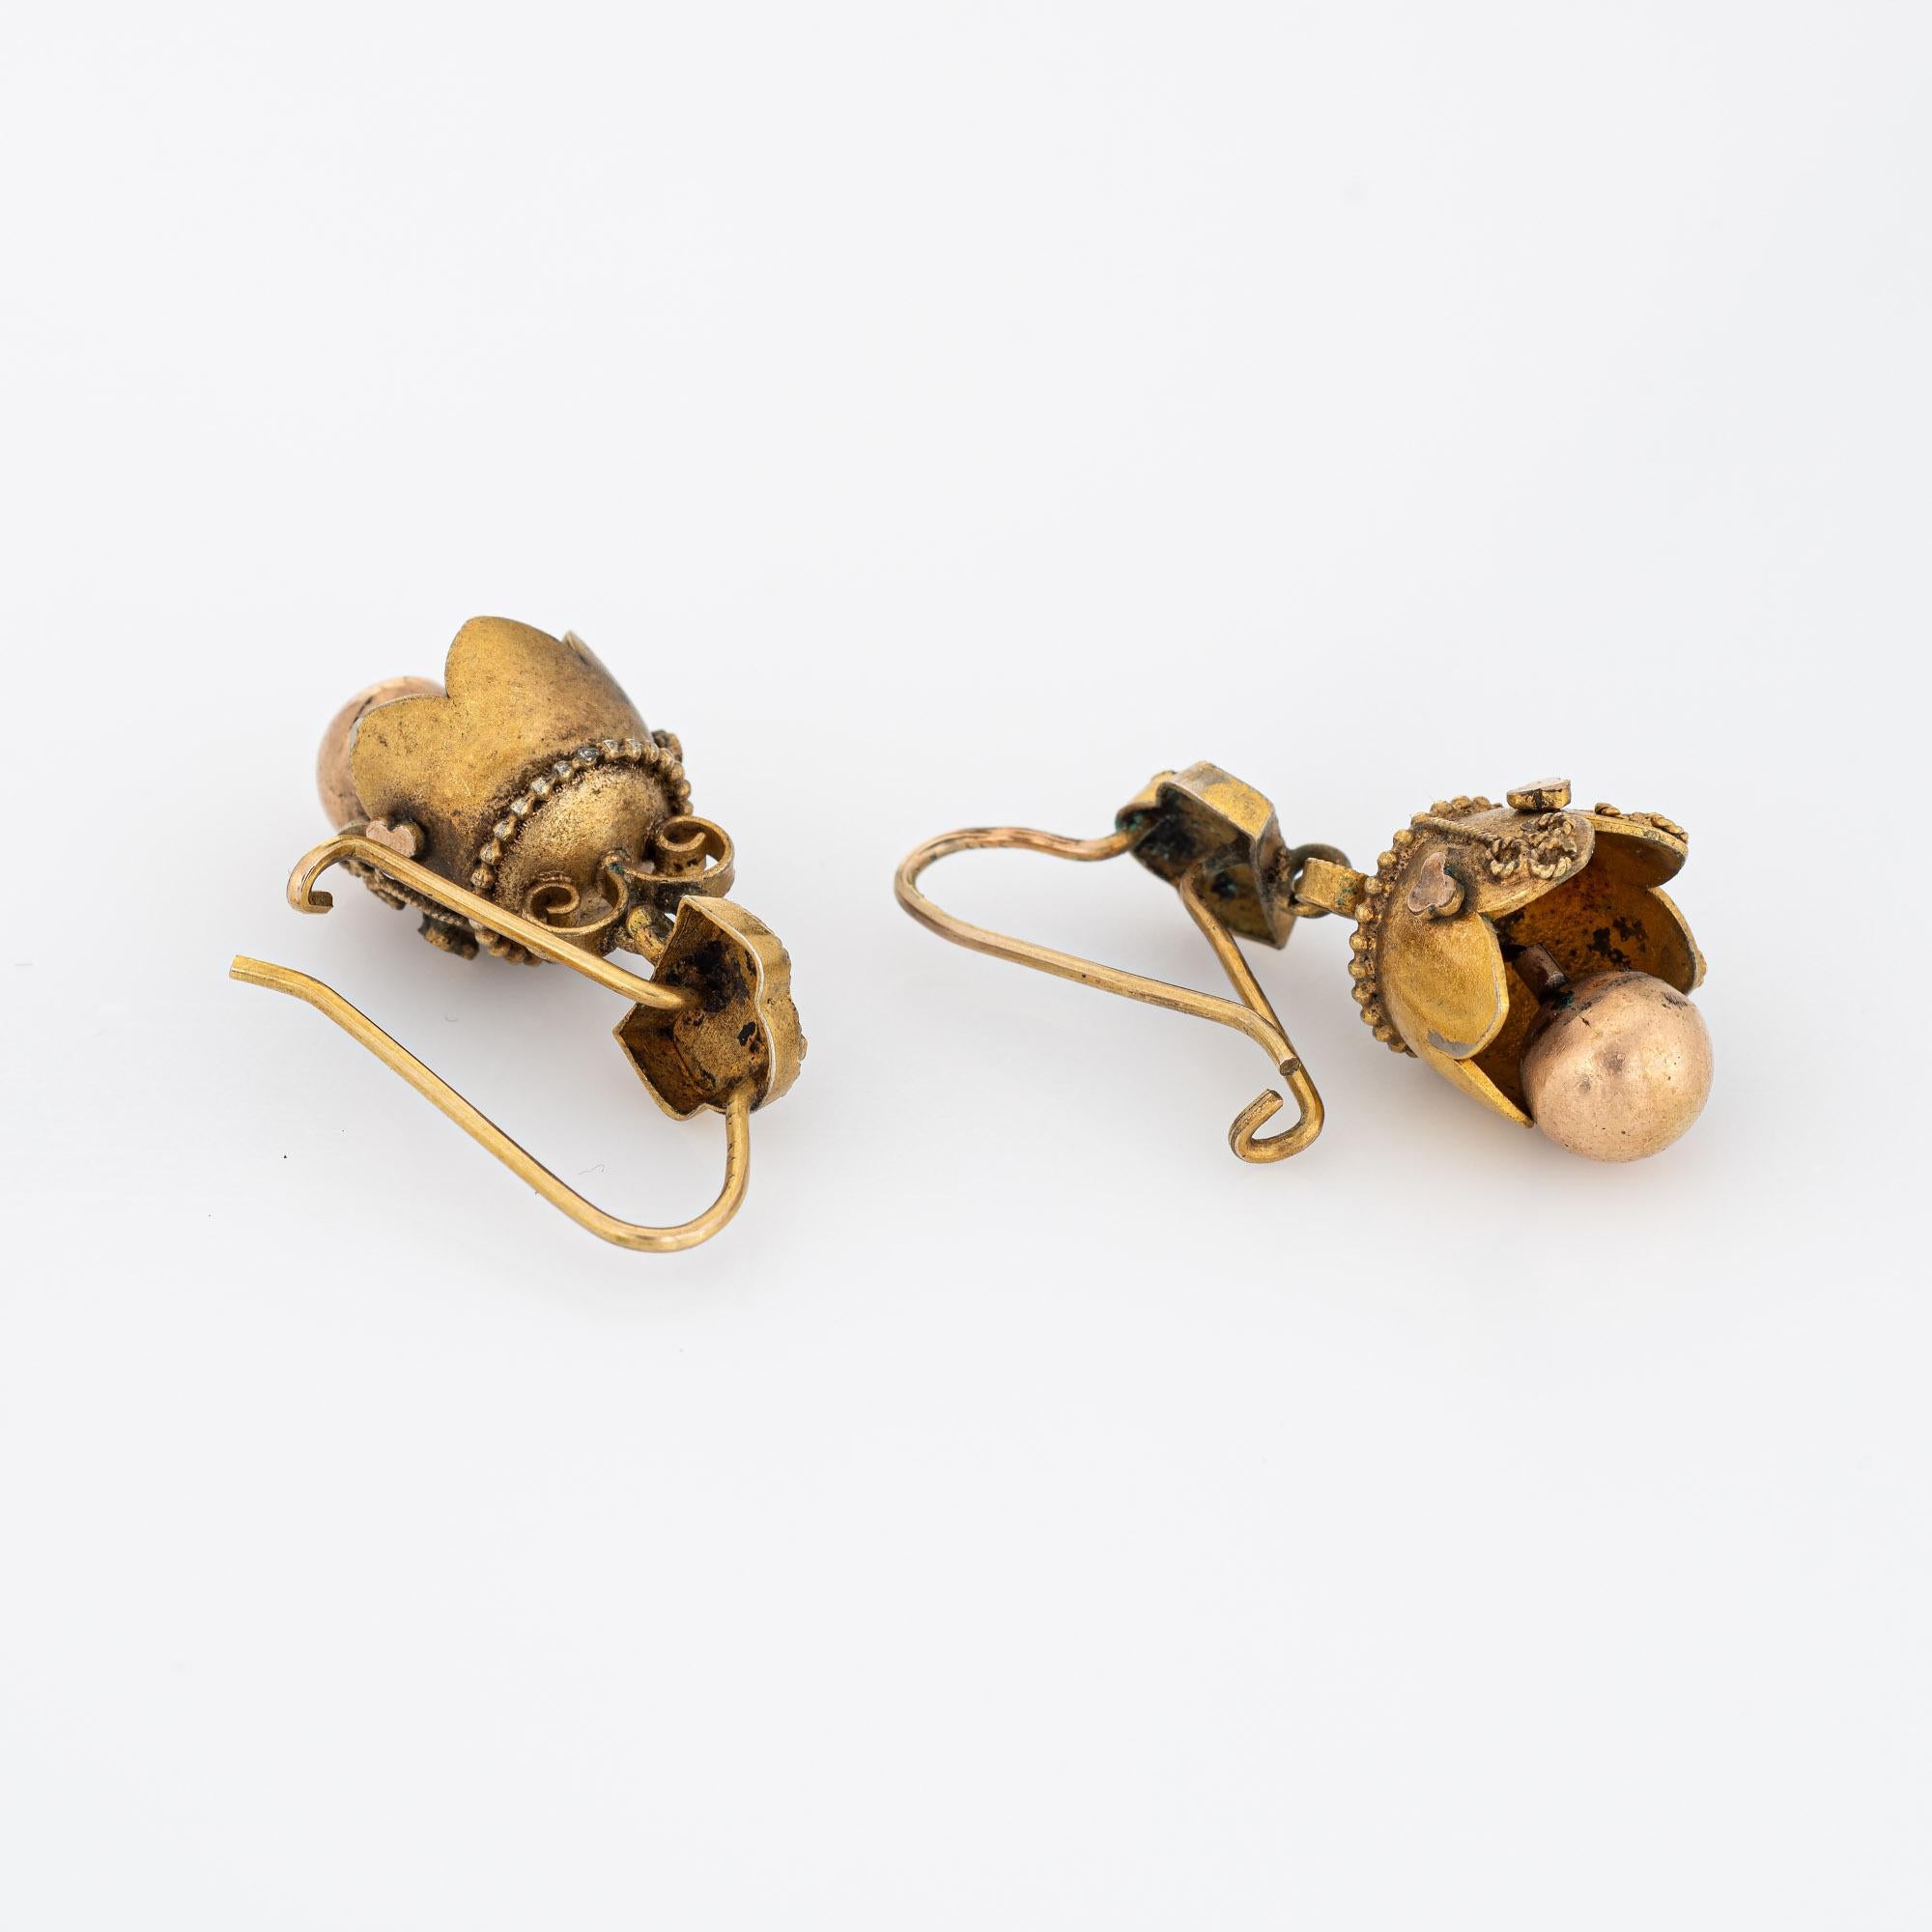 Elegantes Paar antiker viktorianischer Ohrringe (ca. 1880 bis 1900) aus 10 Karat Gelbgold. 

Die bezaubernden Ohrringe aus der Zeit der Etrusker sind mit Perlen, Granulat und Seilen verziert. Die Basis der Ohrringe bewegt sich mit einem leichten und